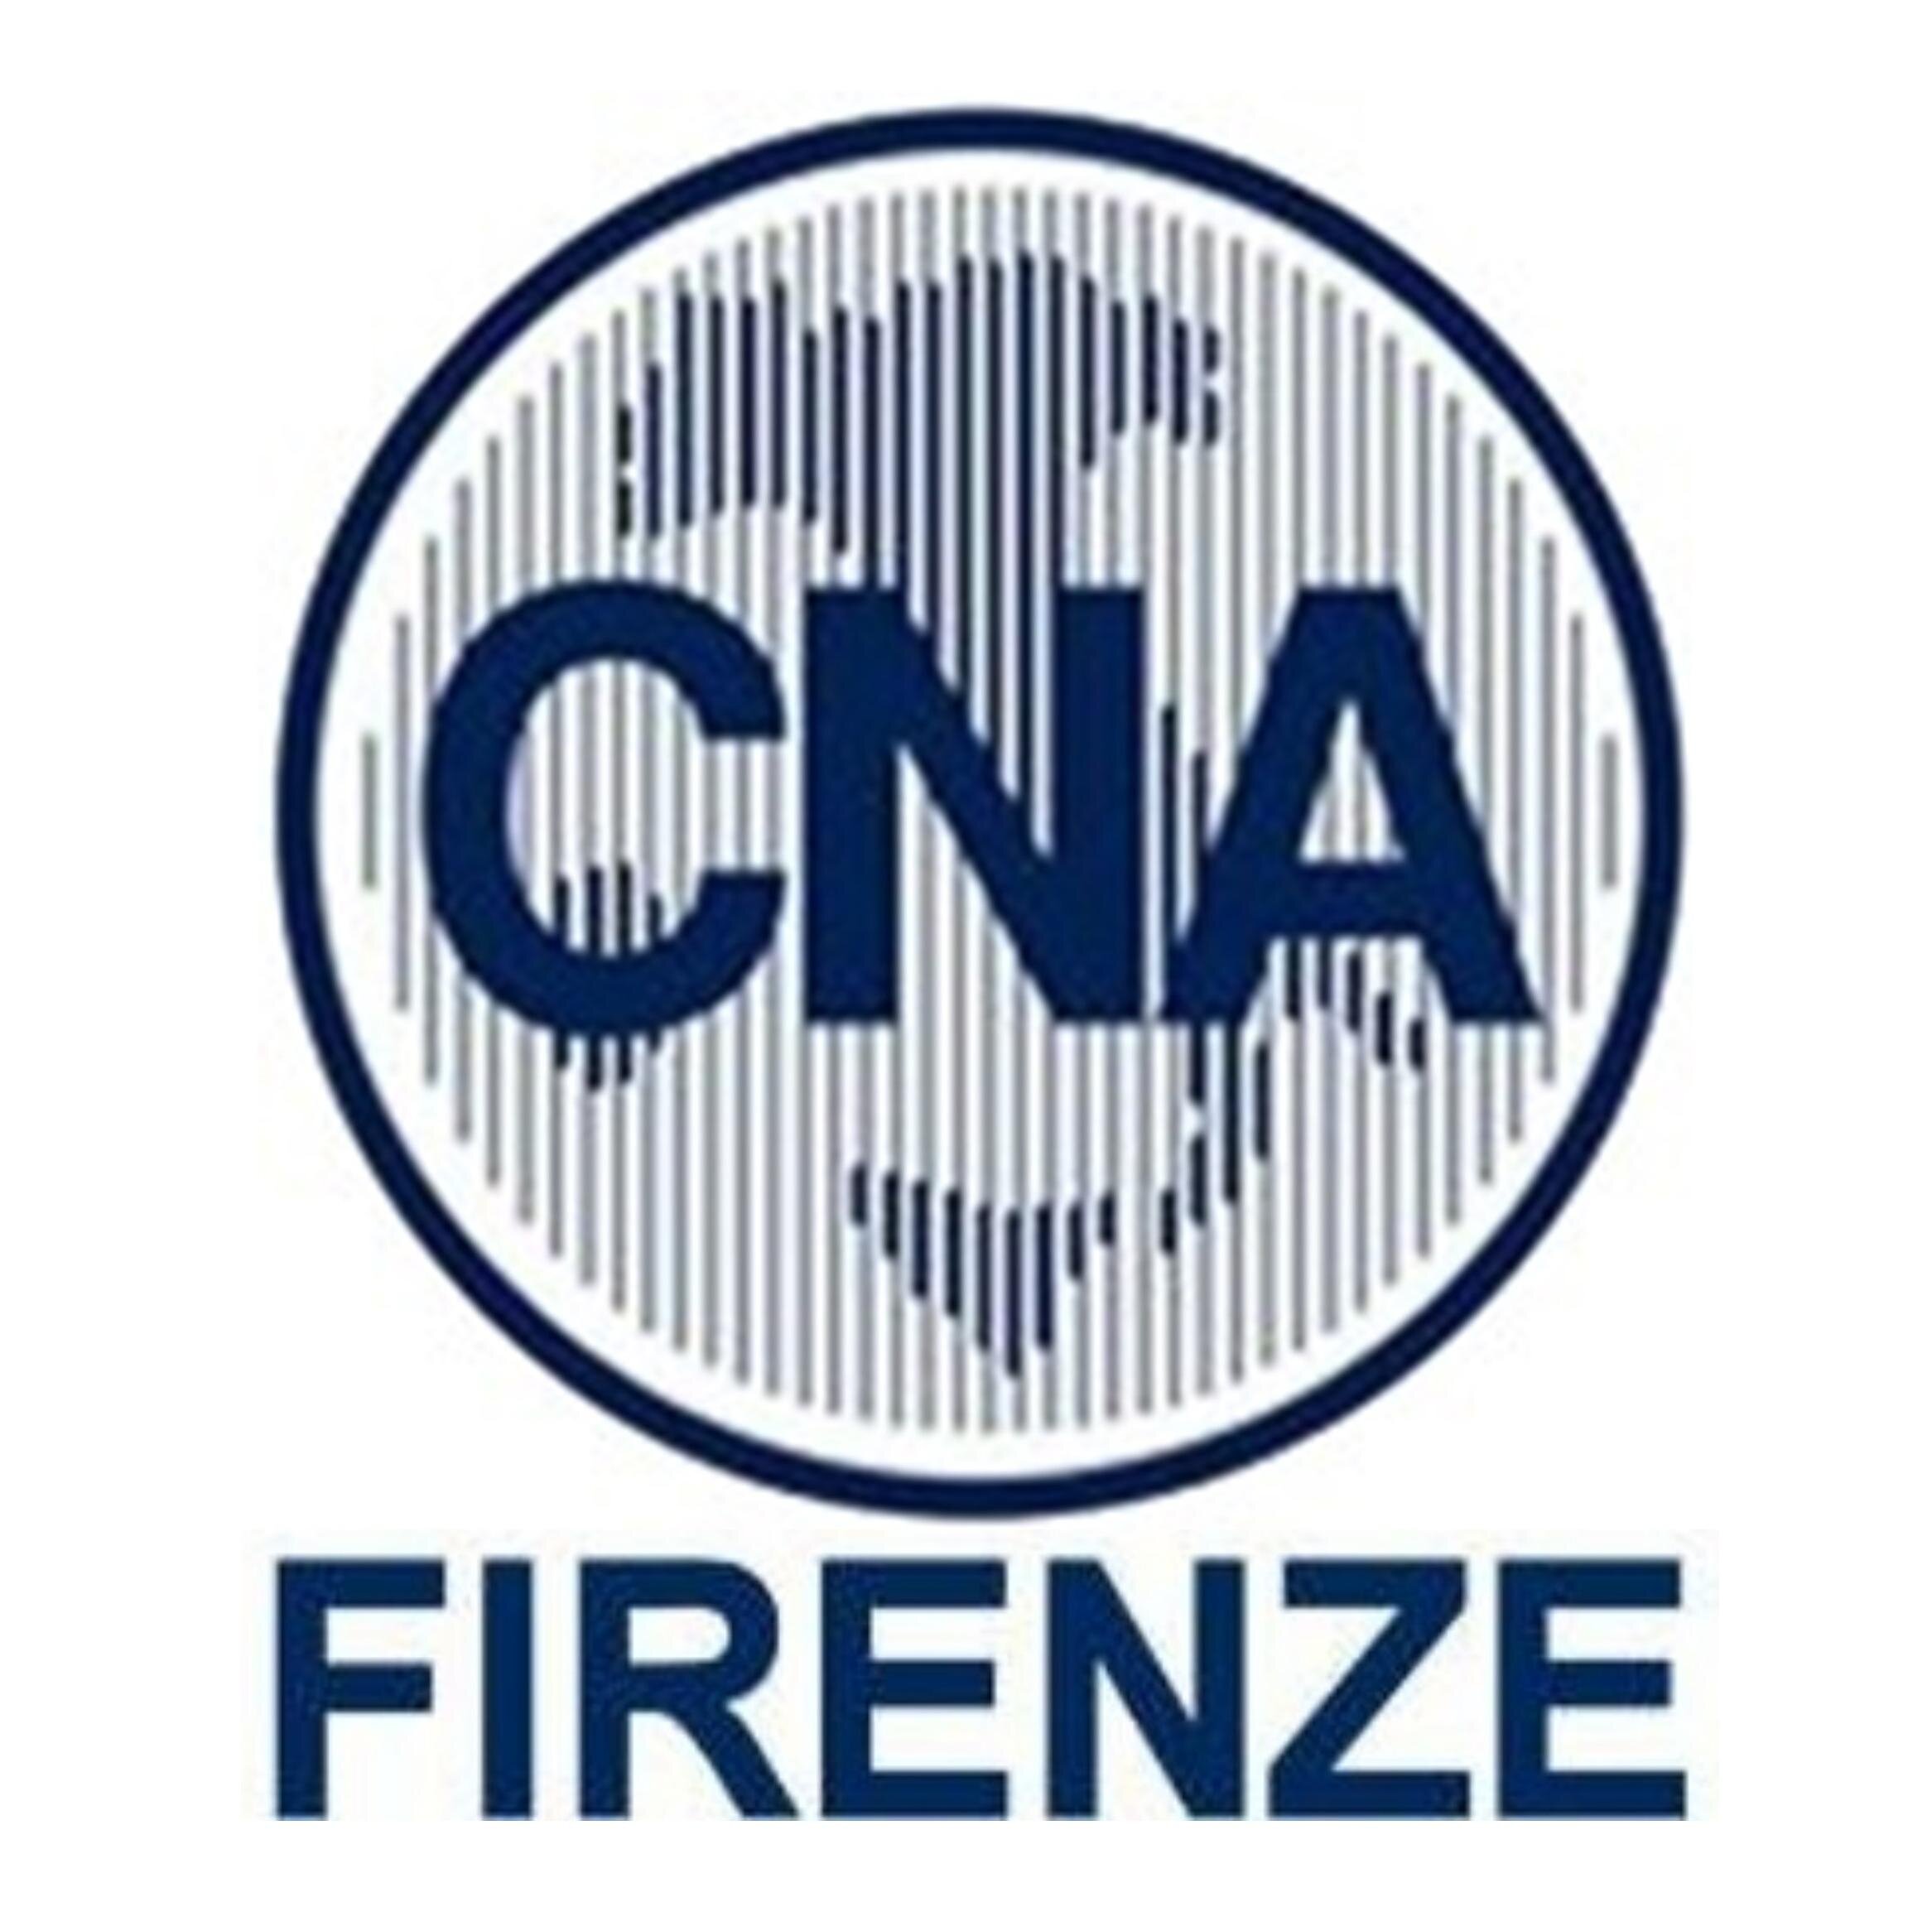 CNA Firenze è tra le più grandi Associazioni di rappresentanza dell’artigianato e della piccola e media impresa della provincia di Firenze.